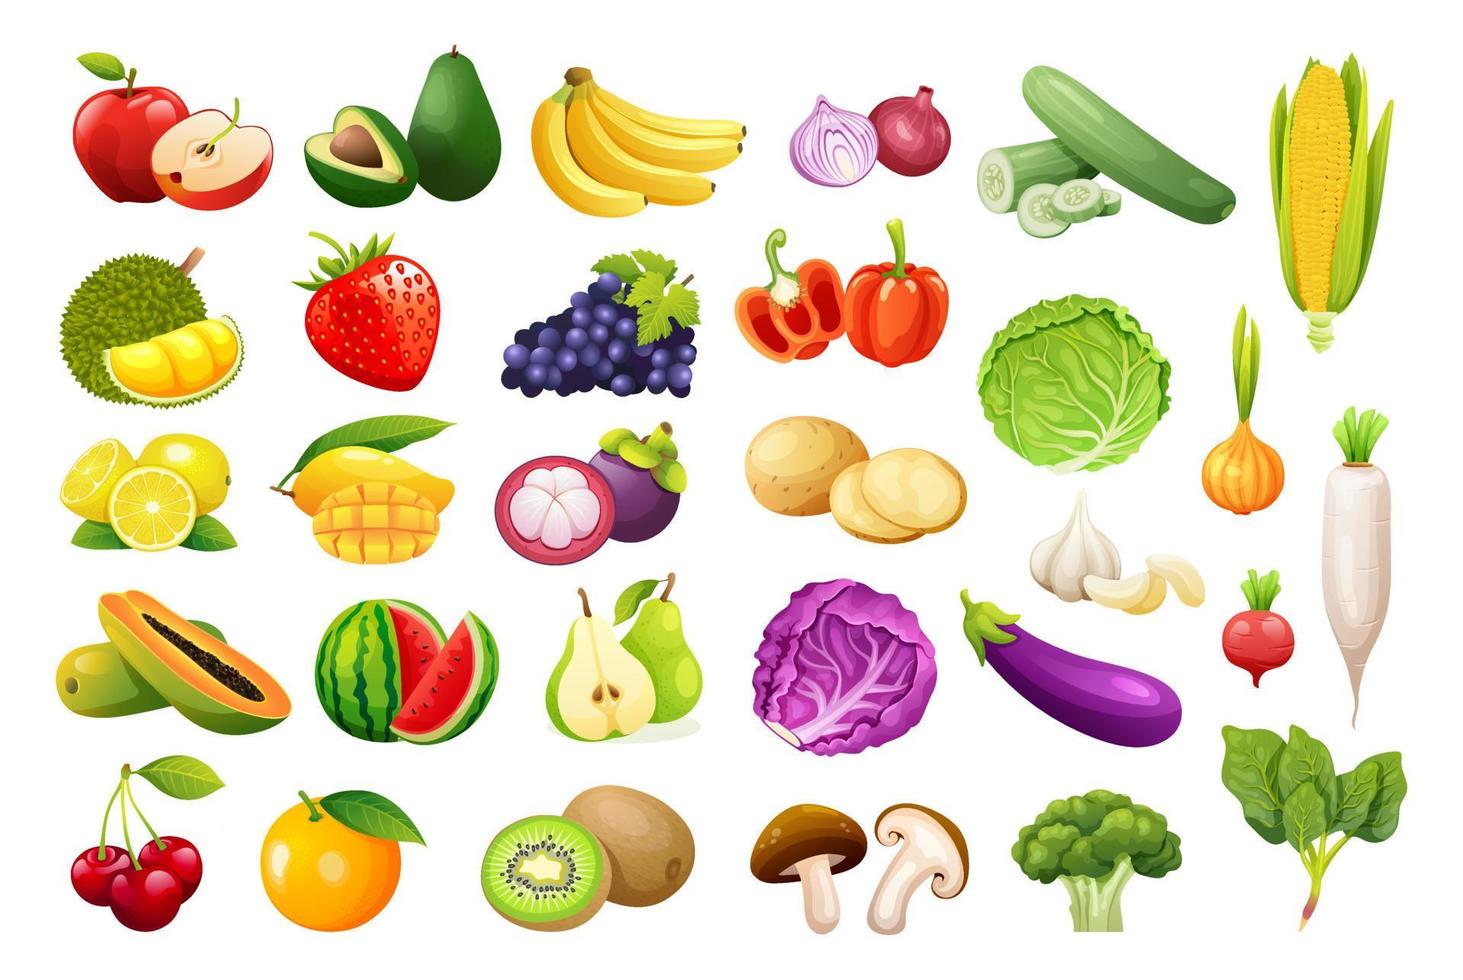 Vektor-Set von Obst und Gemüse im Cartoon-Stil. gesunde lebensmittelillustration vektor